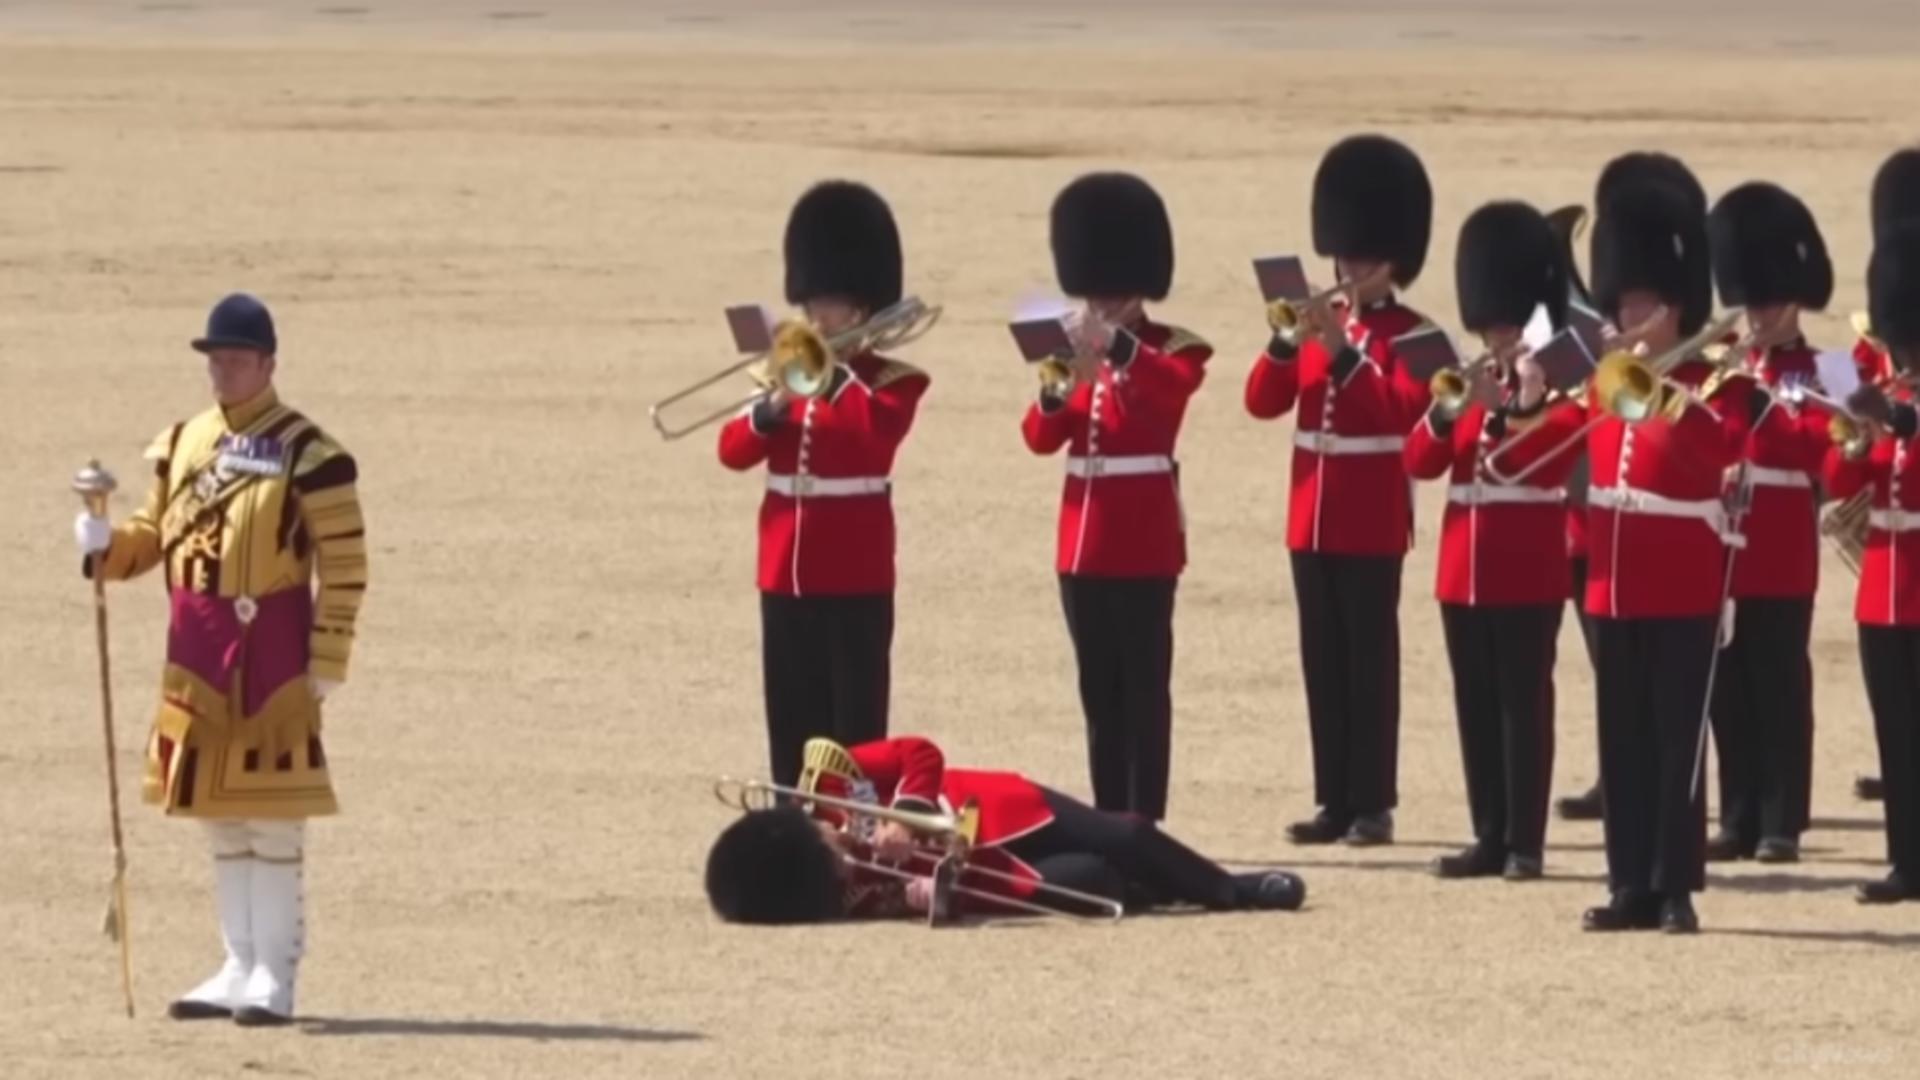 Situație halucinantă la Casa Regală. Un soldat leșină de căldură iar ceilalți nici nu se sinchisesc să îl ajute și continuă să cânte. VIDEO